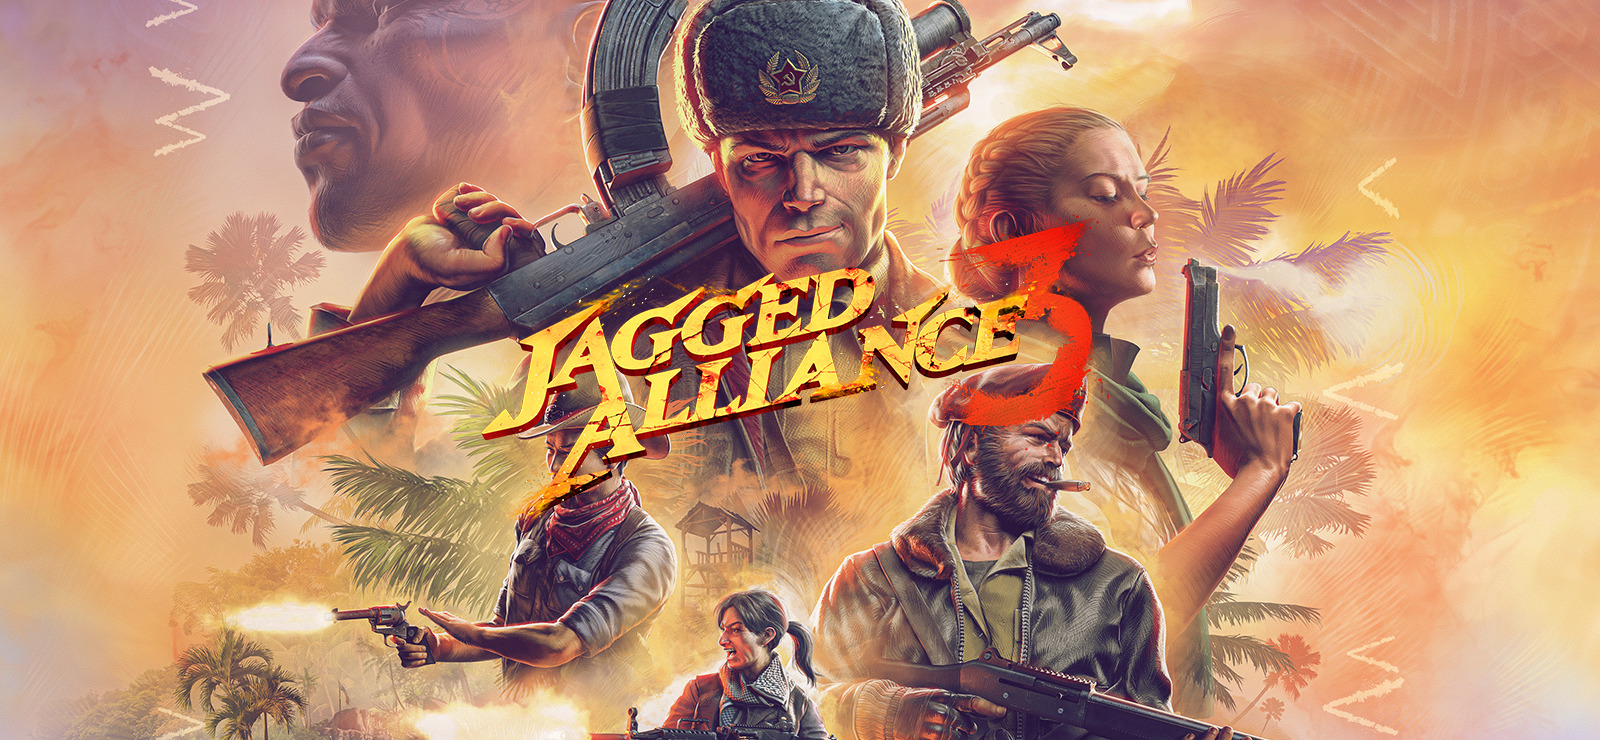 Jagged Alliance 3, en direkt uppföljare till 90-talets RPG-strategiserie Jagged Alliance, är ute på Steam